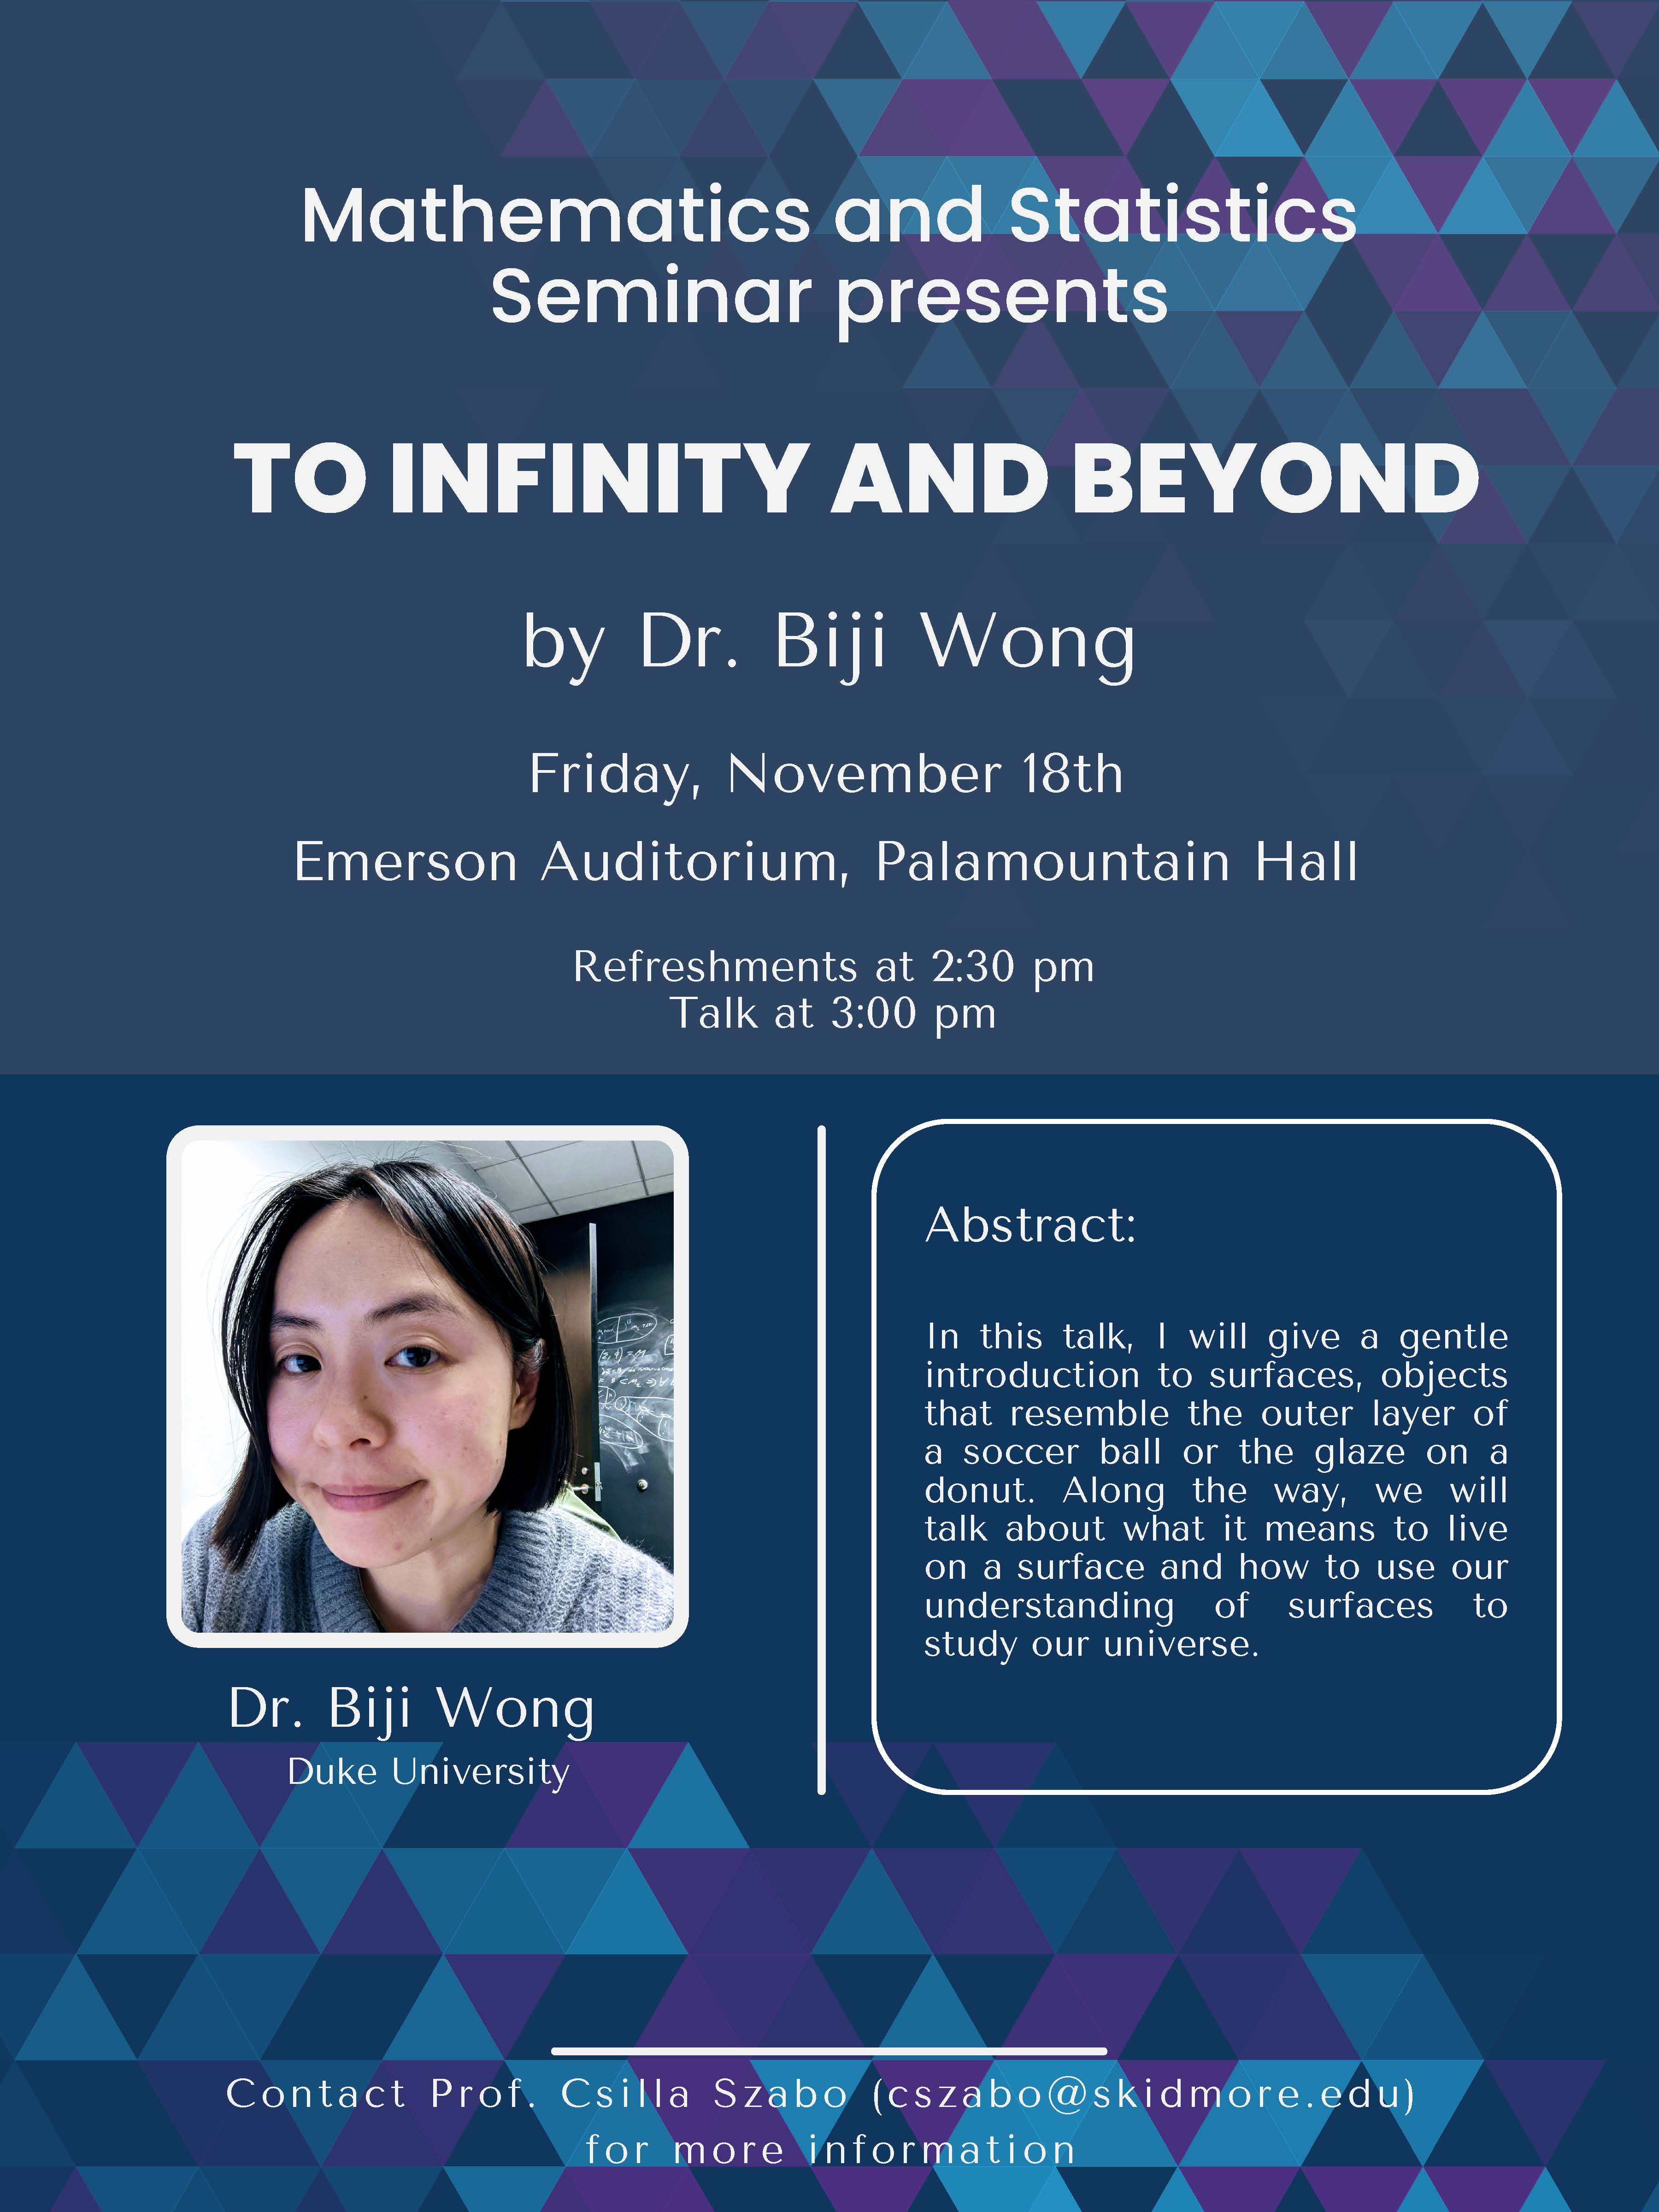 Biji Wong seminar flyer